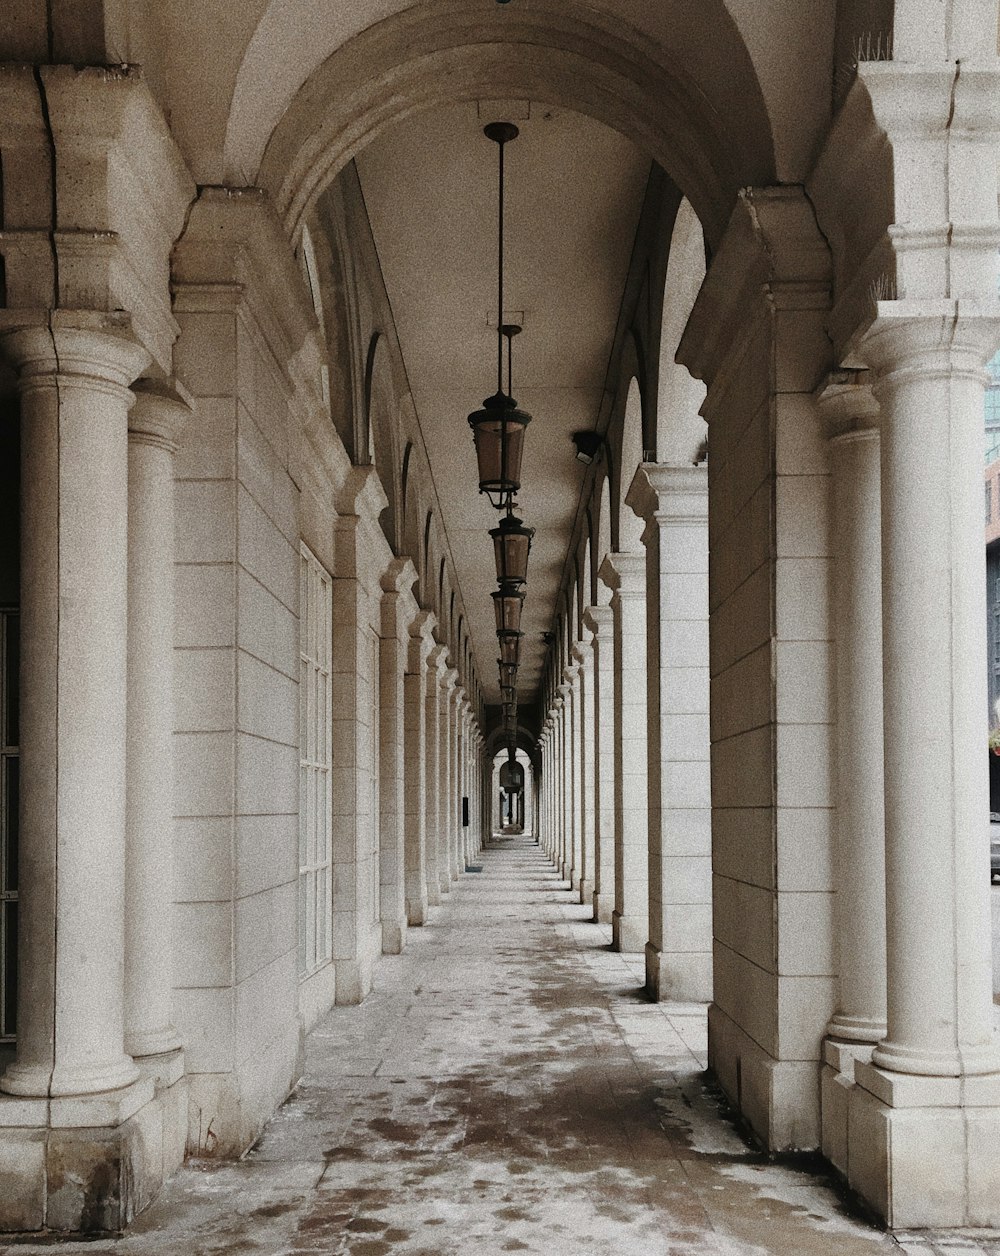 黒い金属の街灯柱のある白いコンクリートの廊下